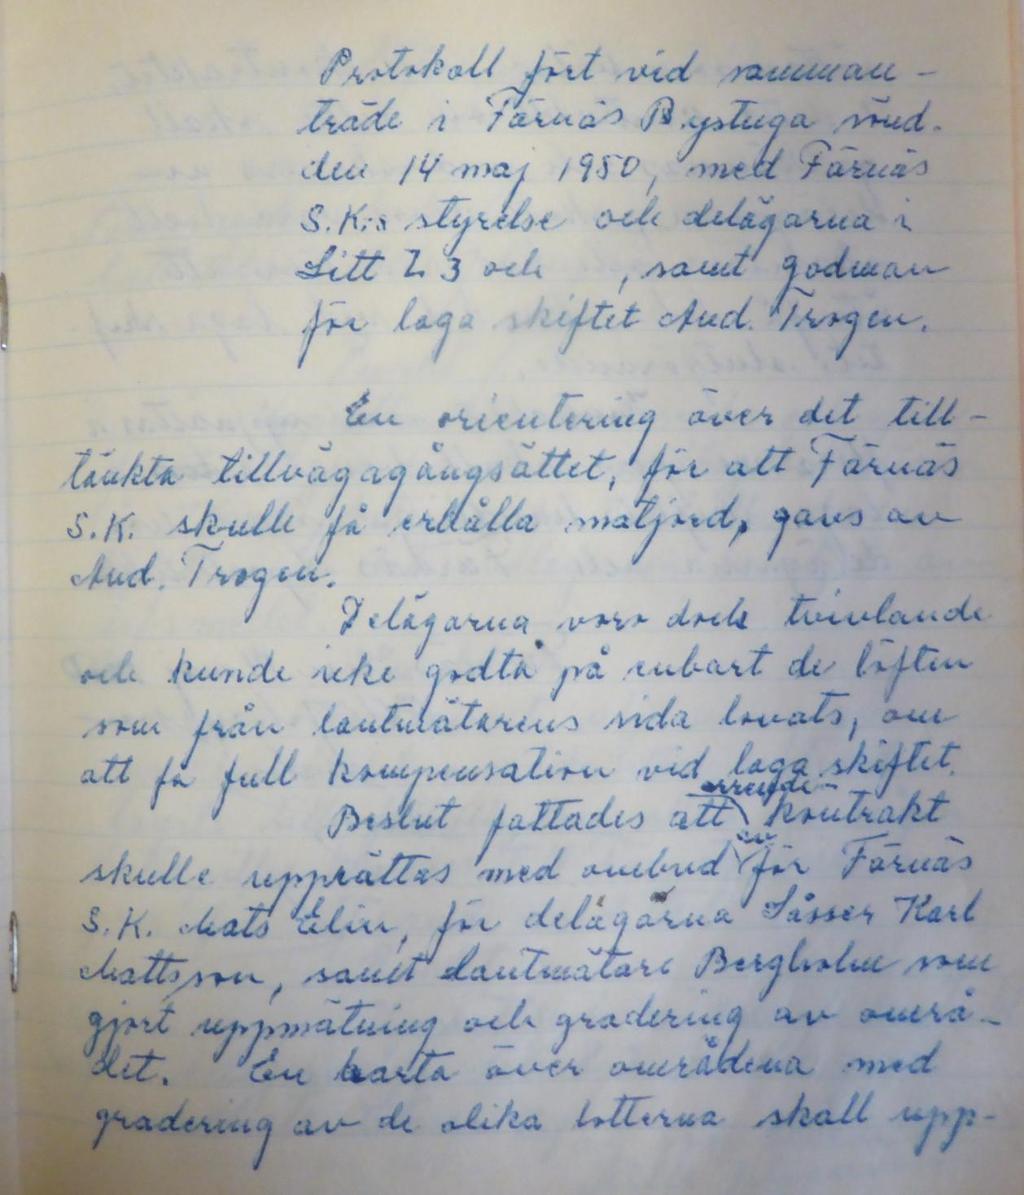 Protokoll fört vid sammanträde i Färnäs Bystuga sönd. Den 14 maj 1950, med Färnäs S.K:s styrelse och delägarna i Litt L.3 och, samt godman för laga skiftet And. Trogen.